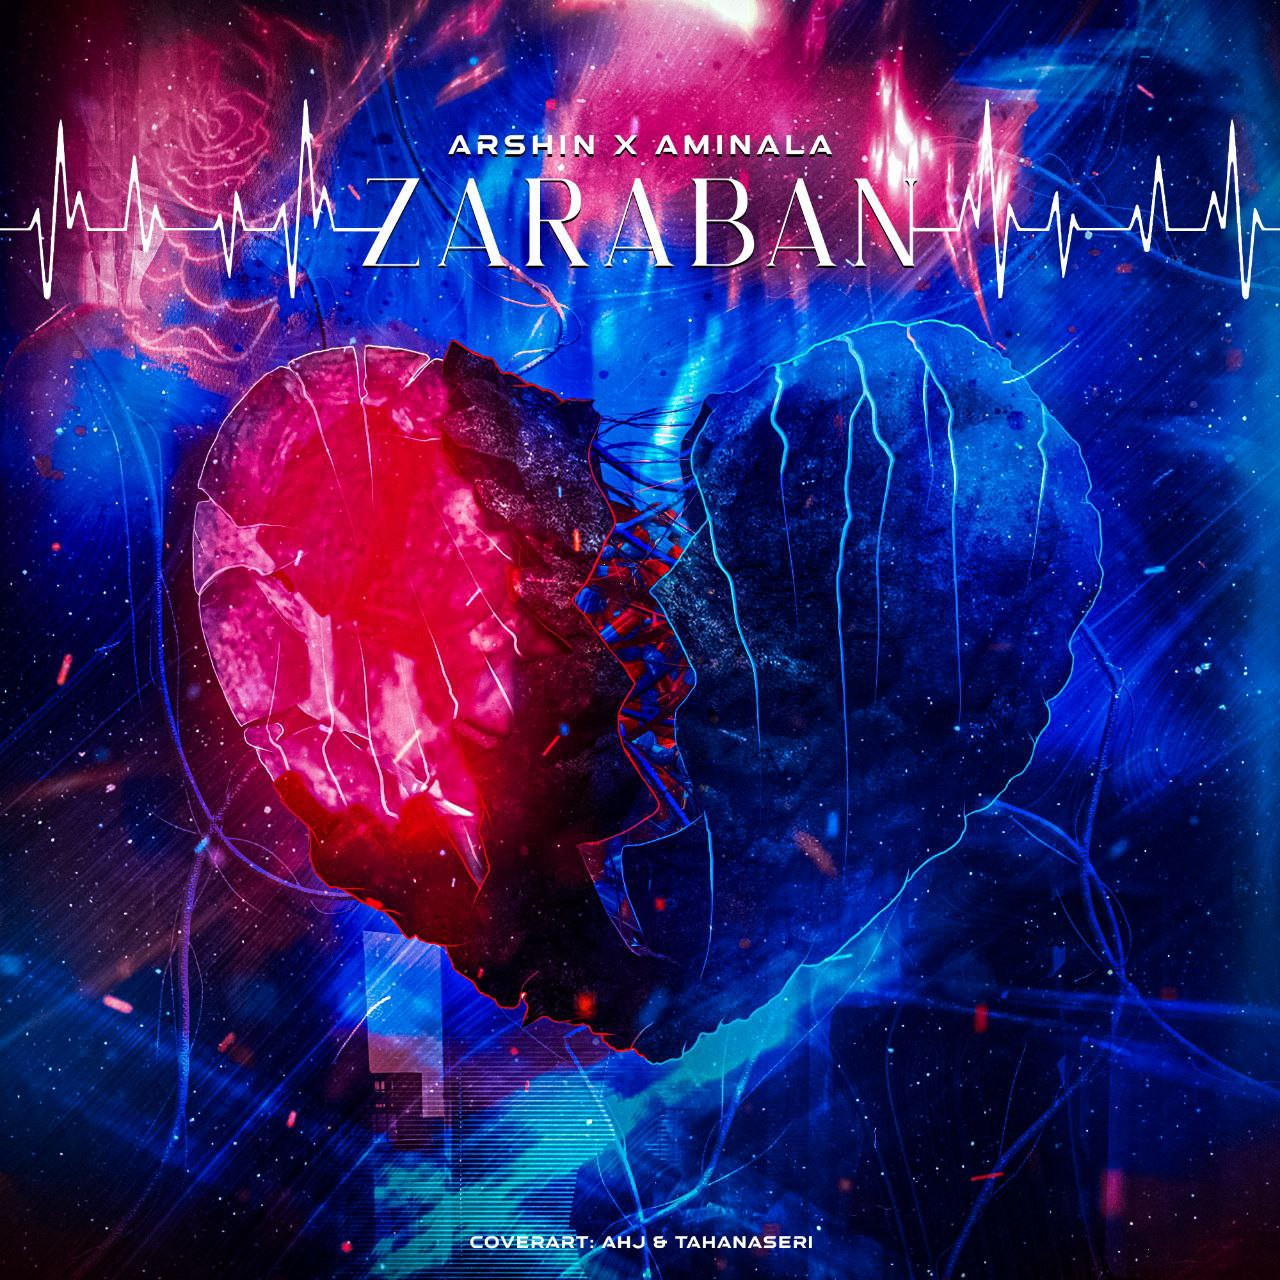 Arshin x AminAla - Zaraban Album